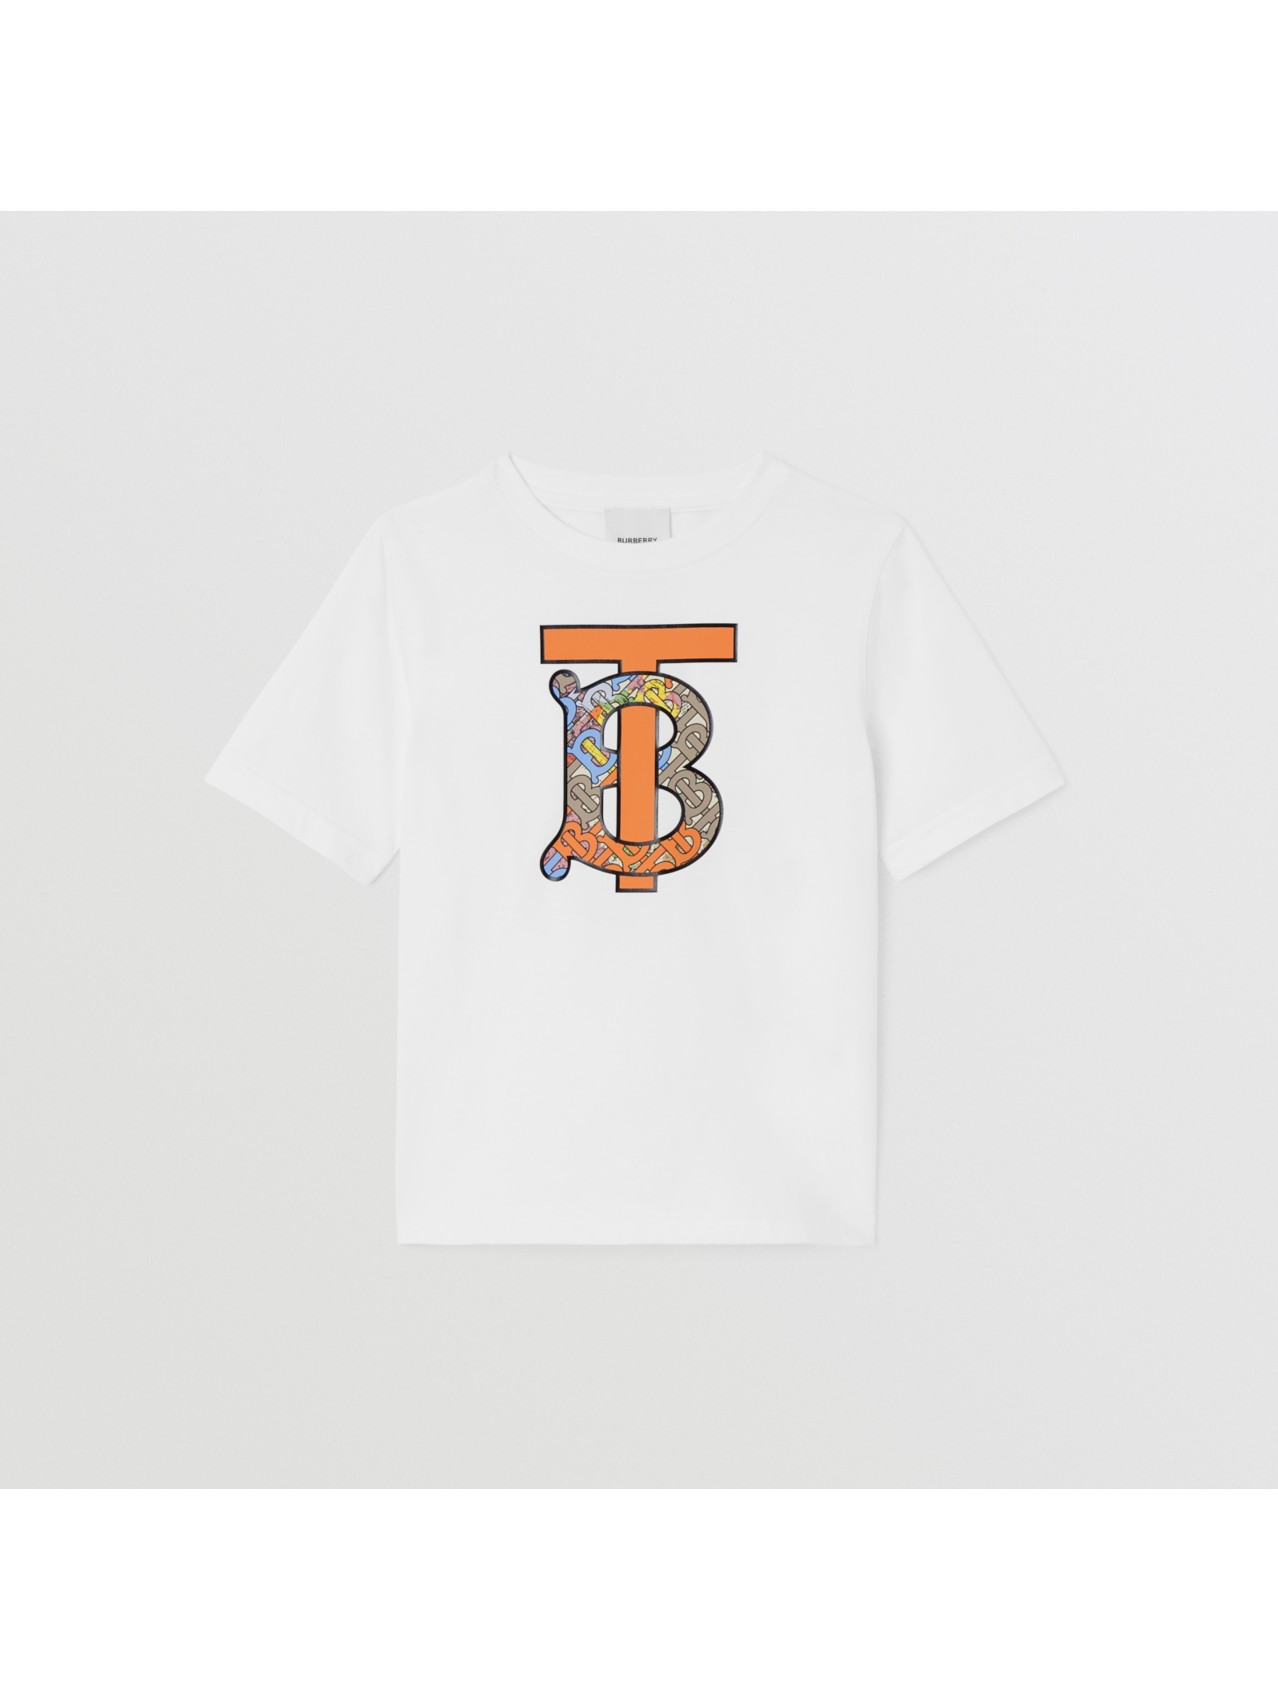 Boys’ Designer Clothing | Burberry Boy | Burberry® Official